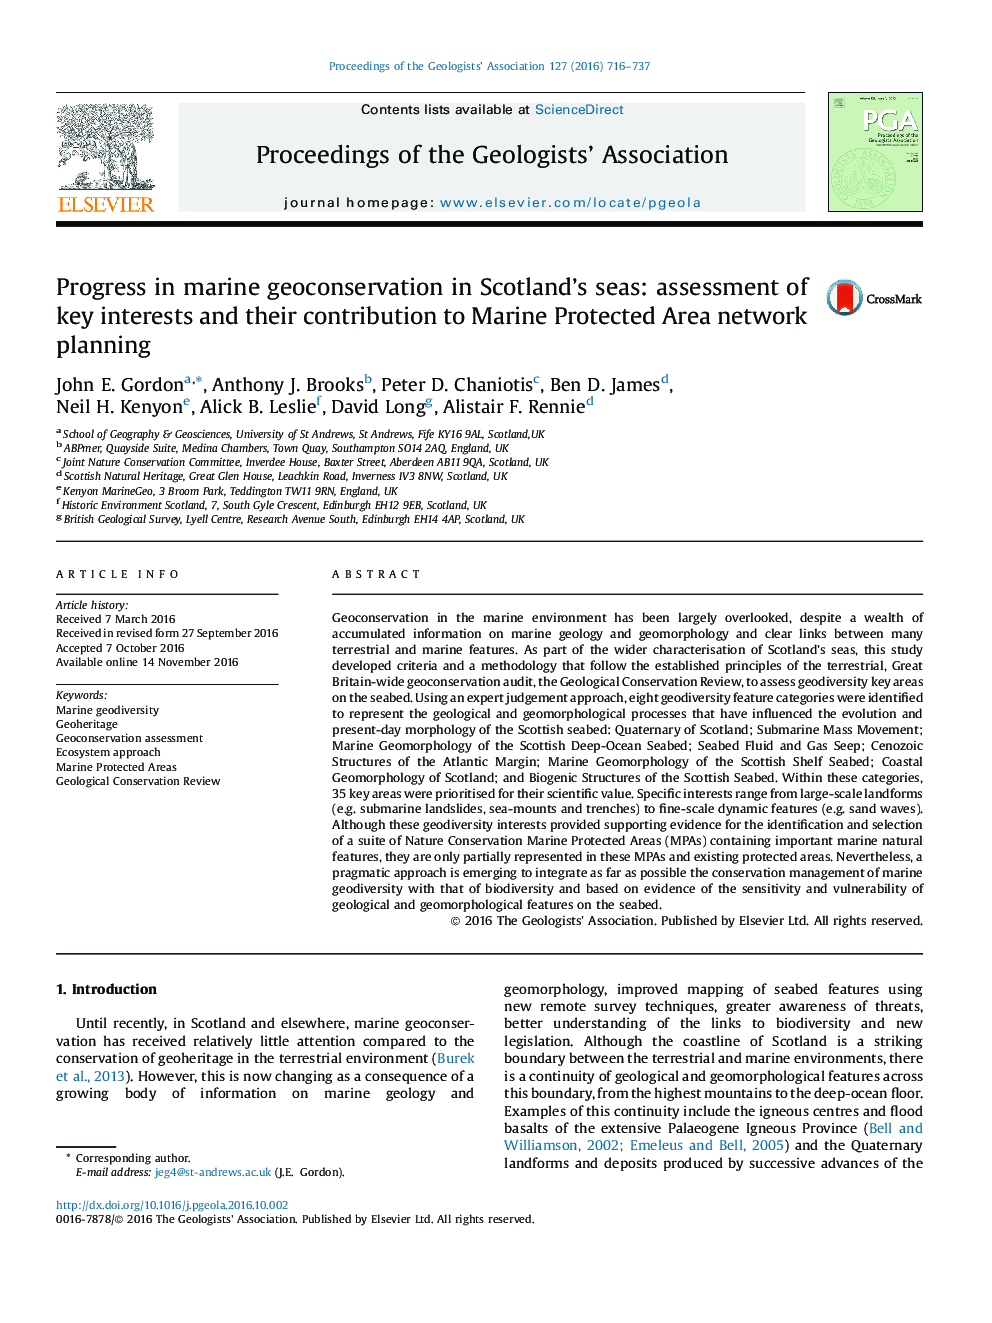 پیشرفت در حفاظت از ژئوتکستایل دریایی در دریاهای اسکاتلند: ارزیابی منافع کلیدی و سهم آنها در برنامه ریزی شبکه منطقه حفاظت شده دریایی 